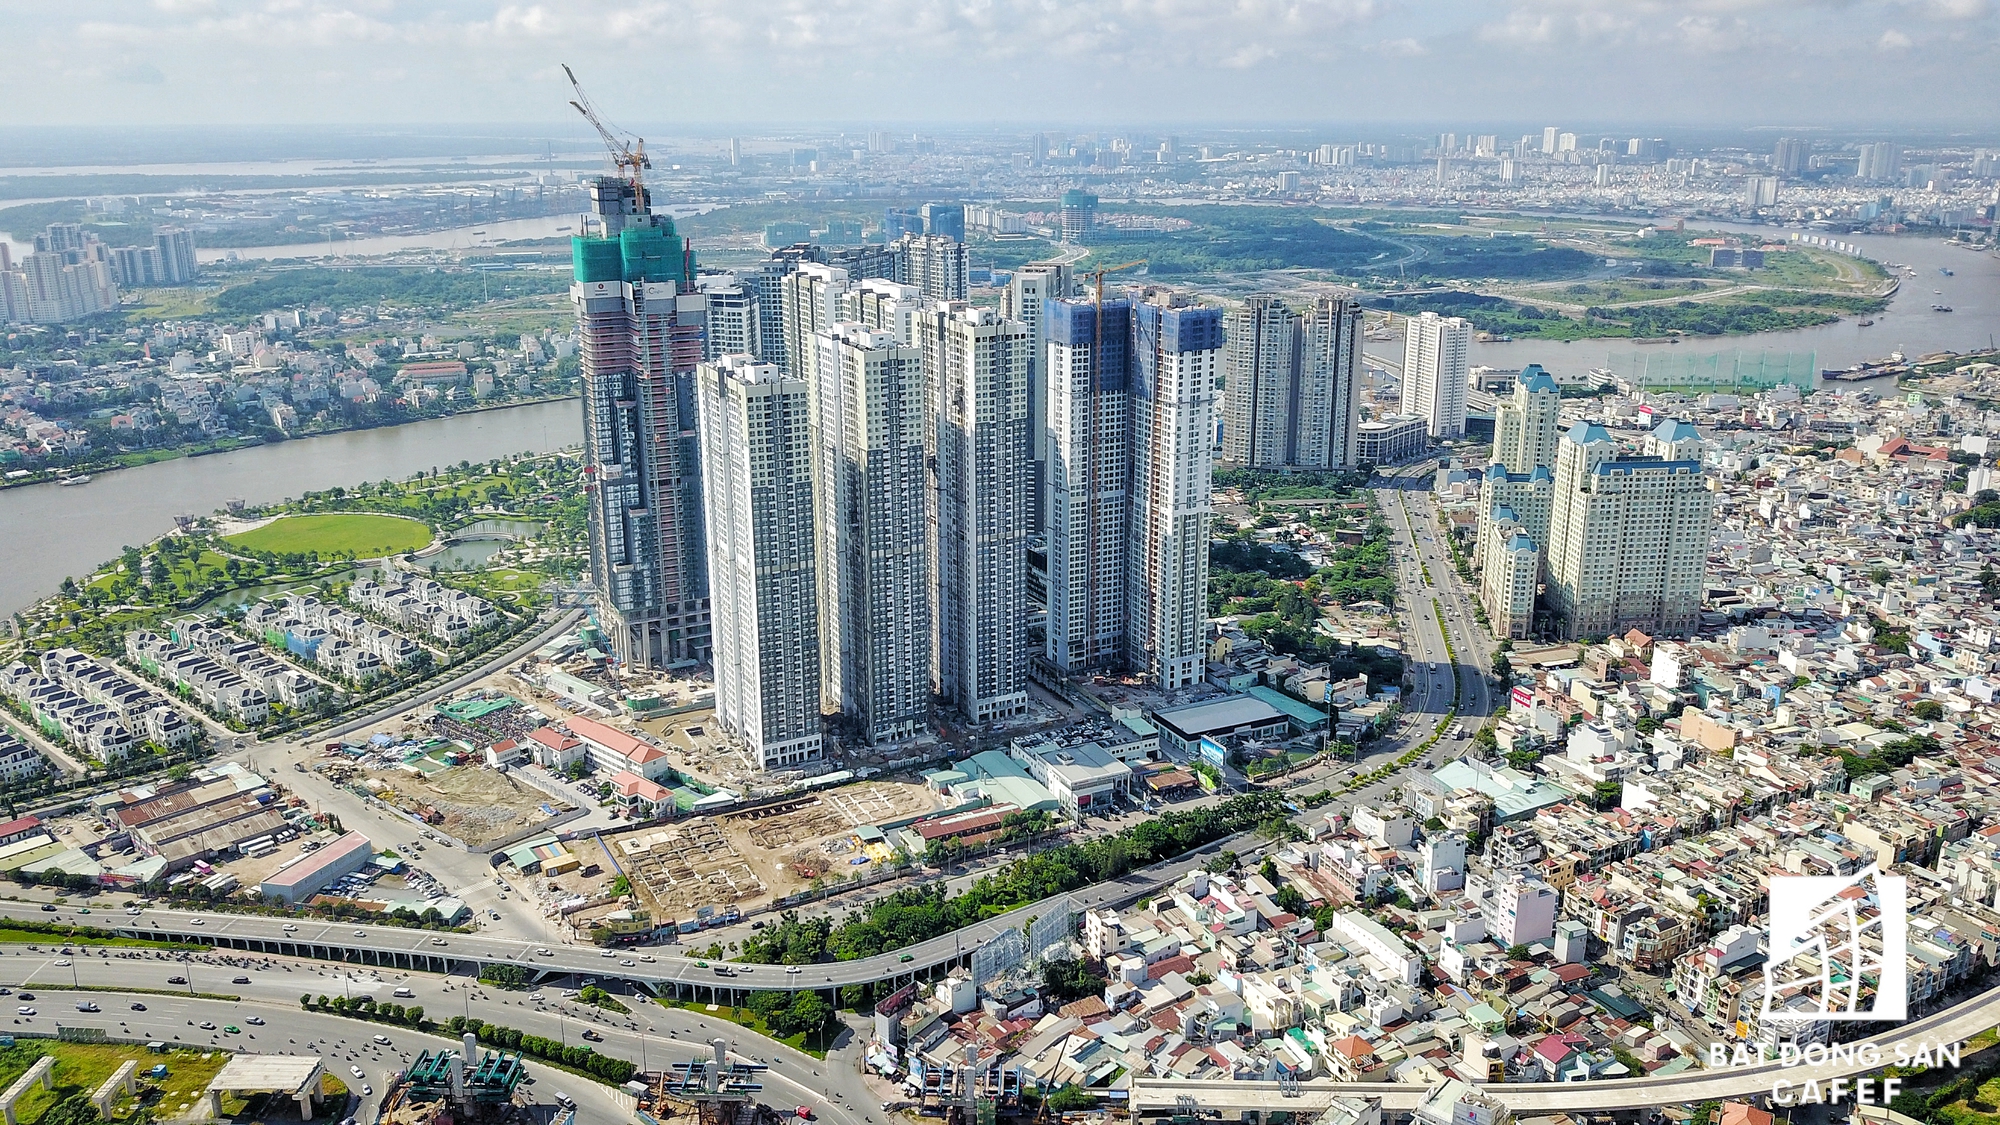 
Cụm dự án căn hộ cao cấp ven sông Sài Gòn.

 
